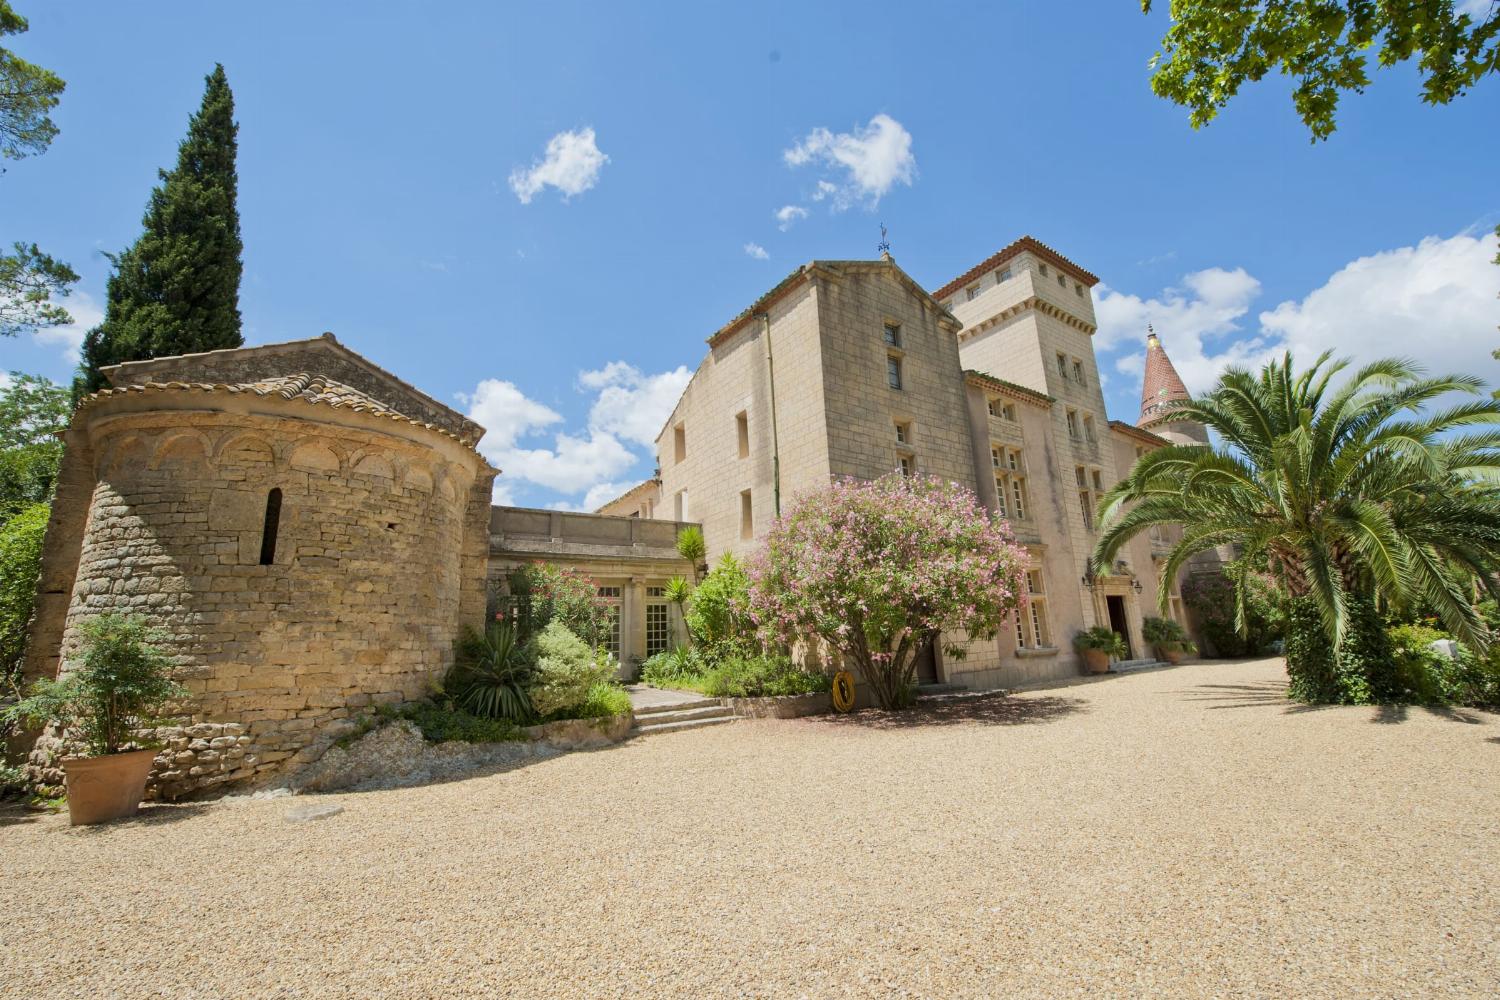 Château de vacances dans le sud de la France